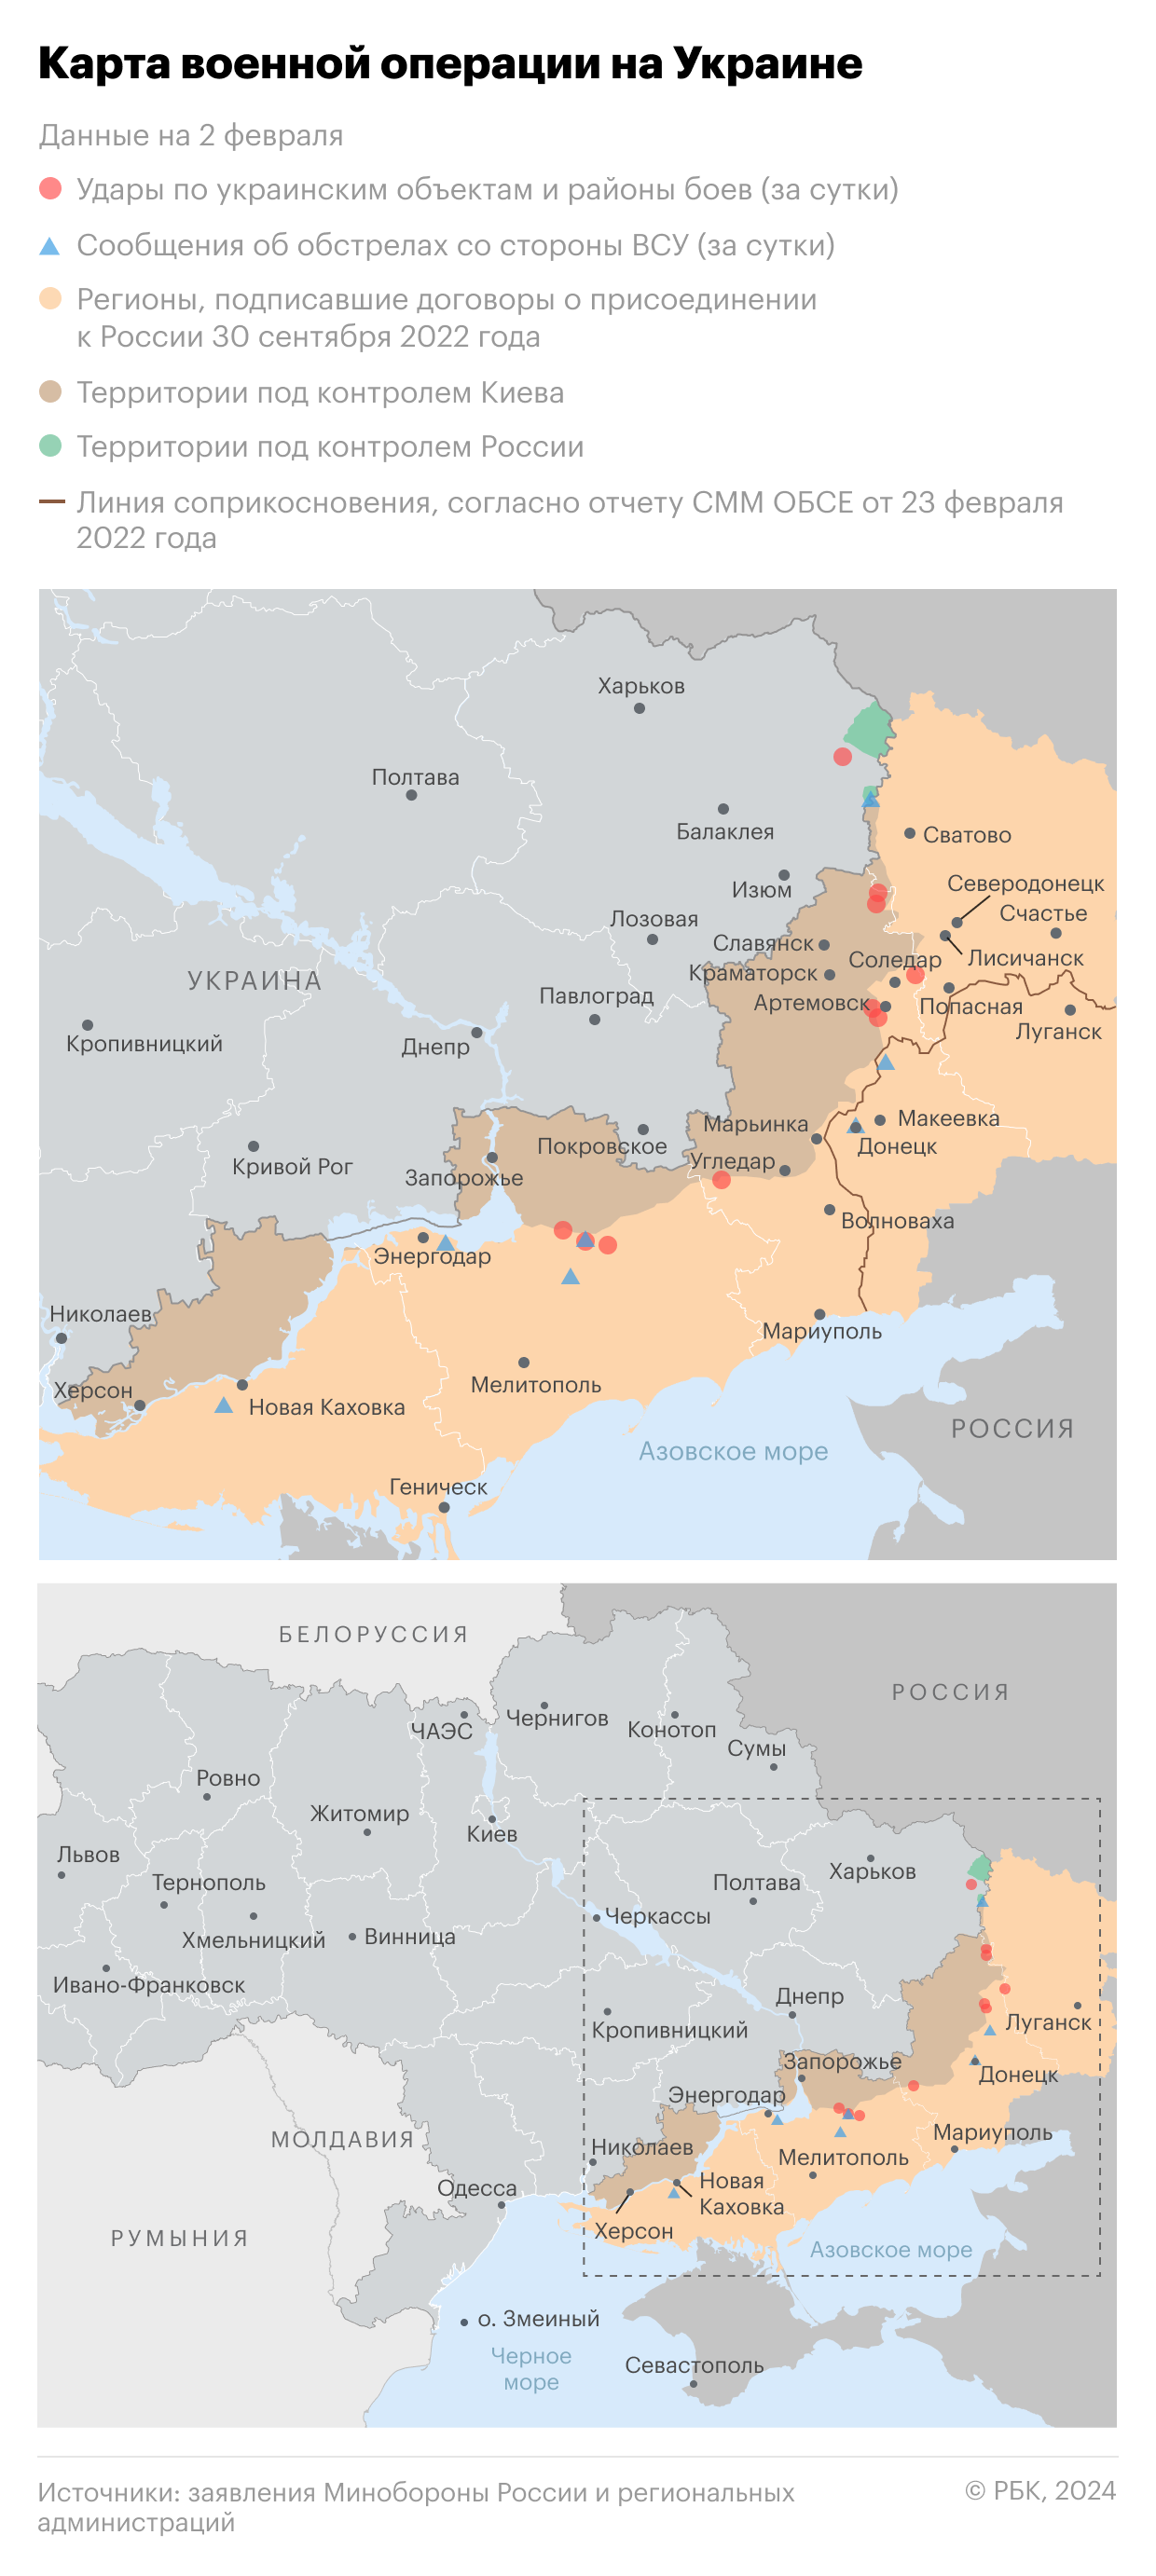 Франция пообещала поставить Украине вооружения «последнего поколения»"/>













